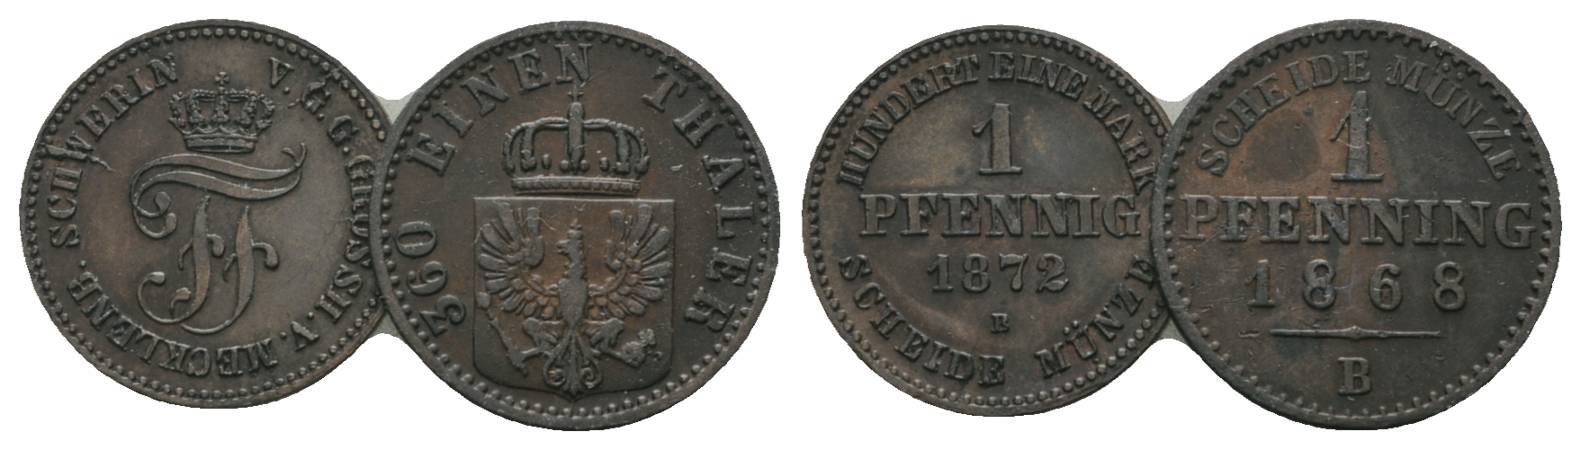  Altdeutschland, 2 Kleinmünzen (1872/1868)   